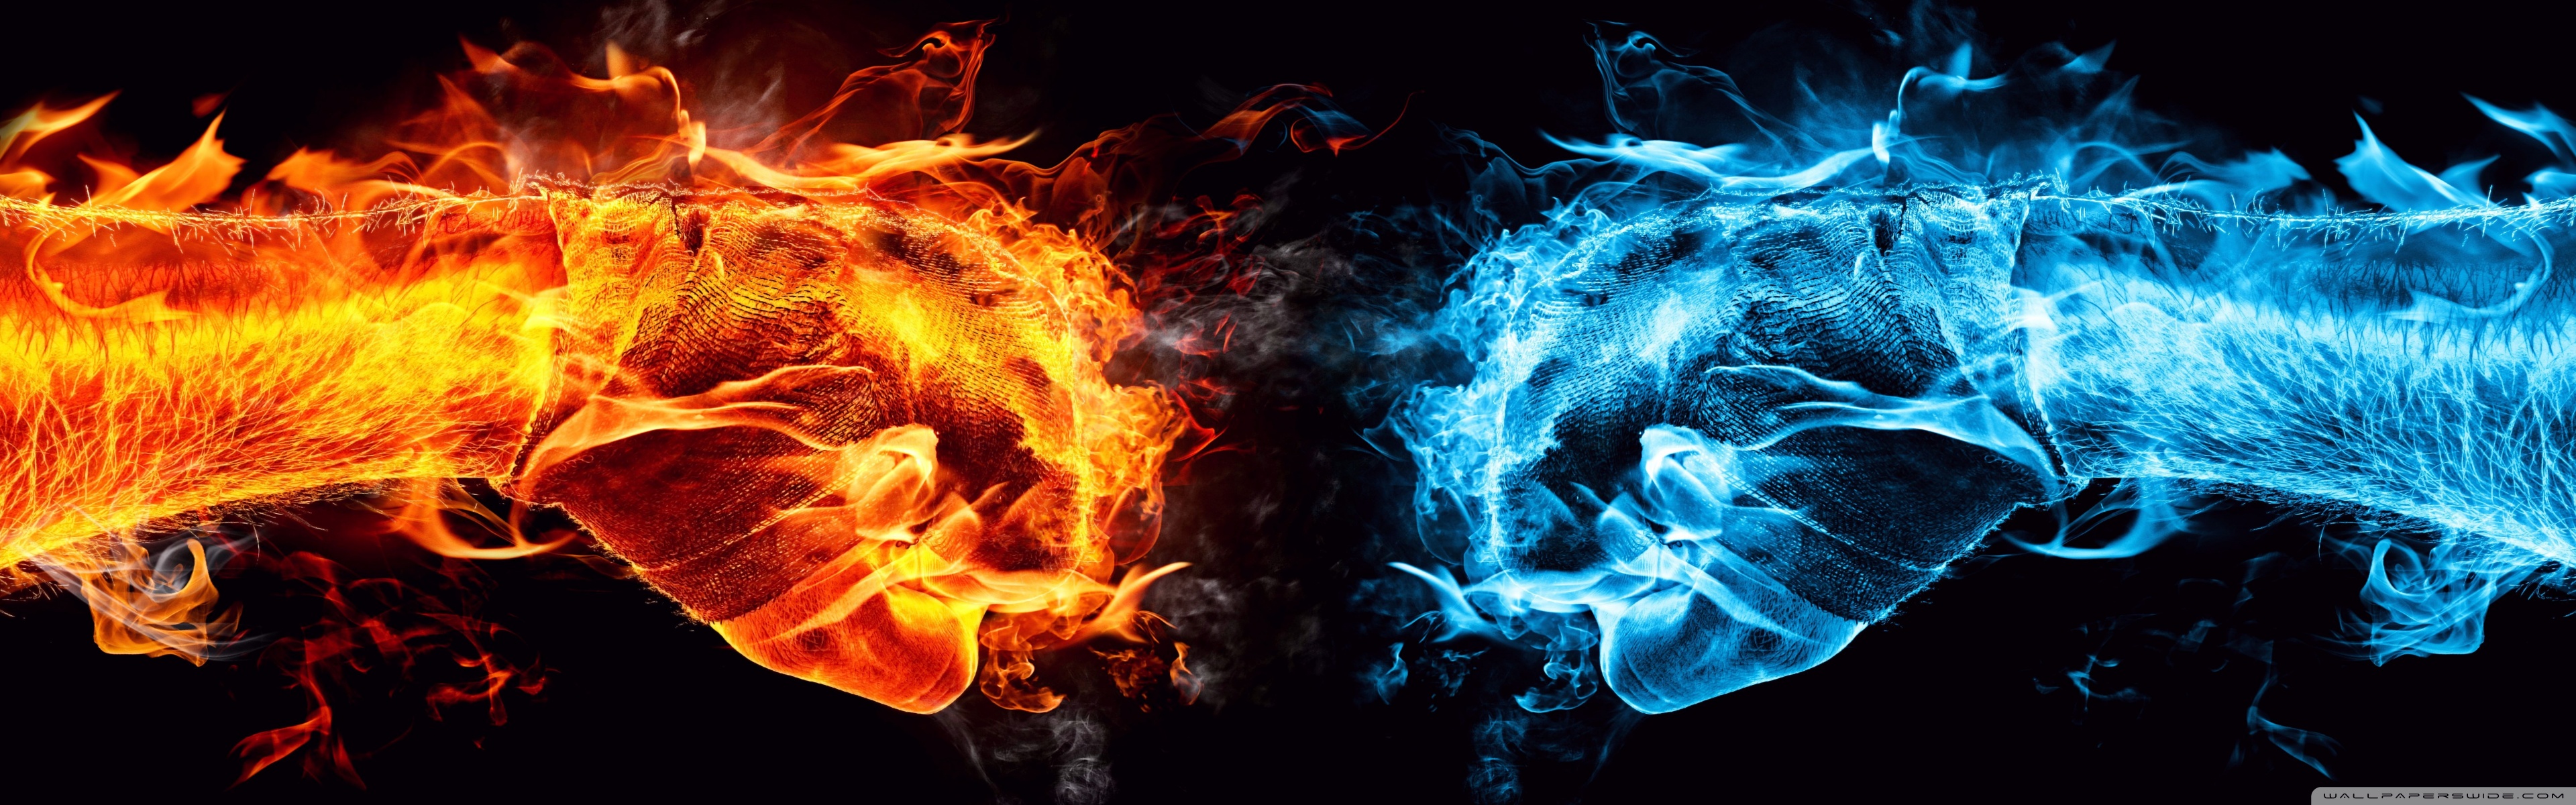 Fire Fist Vs Water Ultra HD Desktop Background Wallpaper For